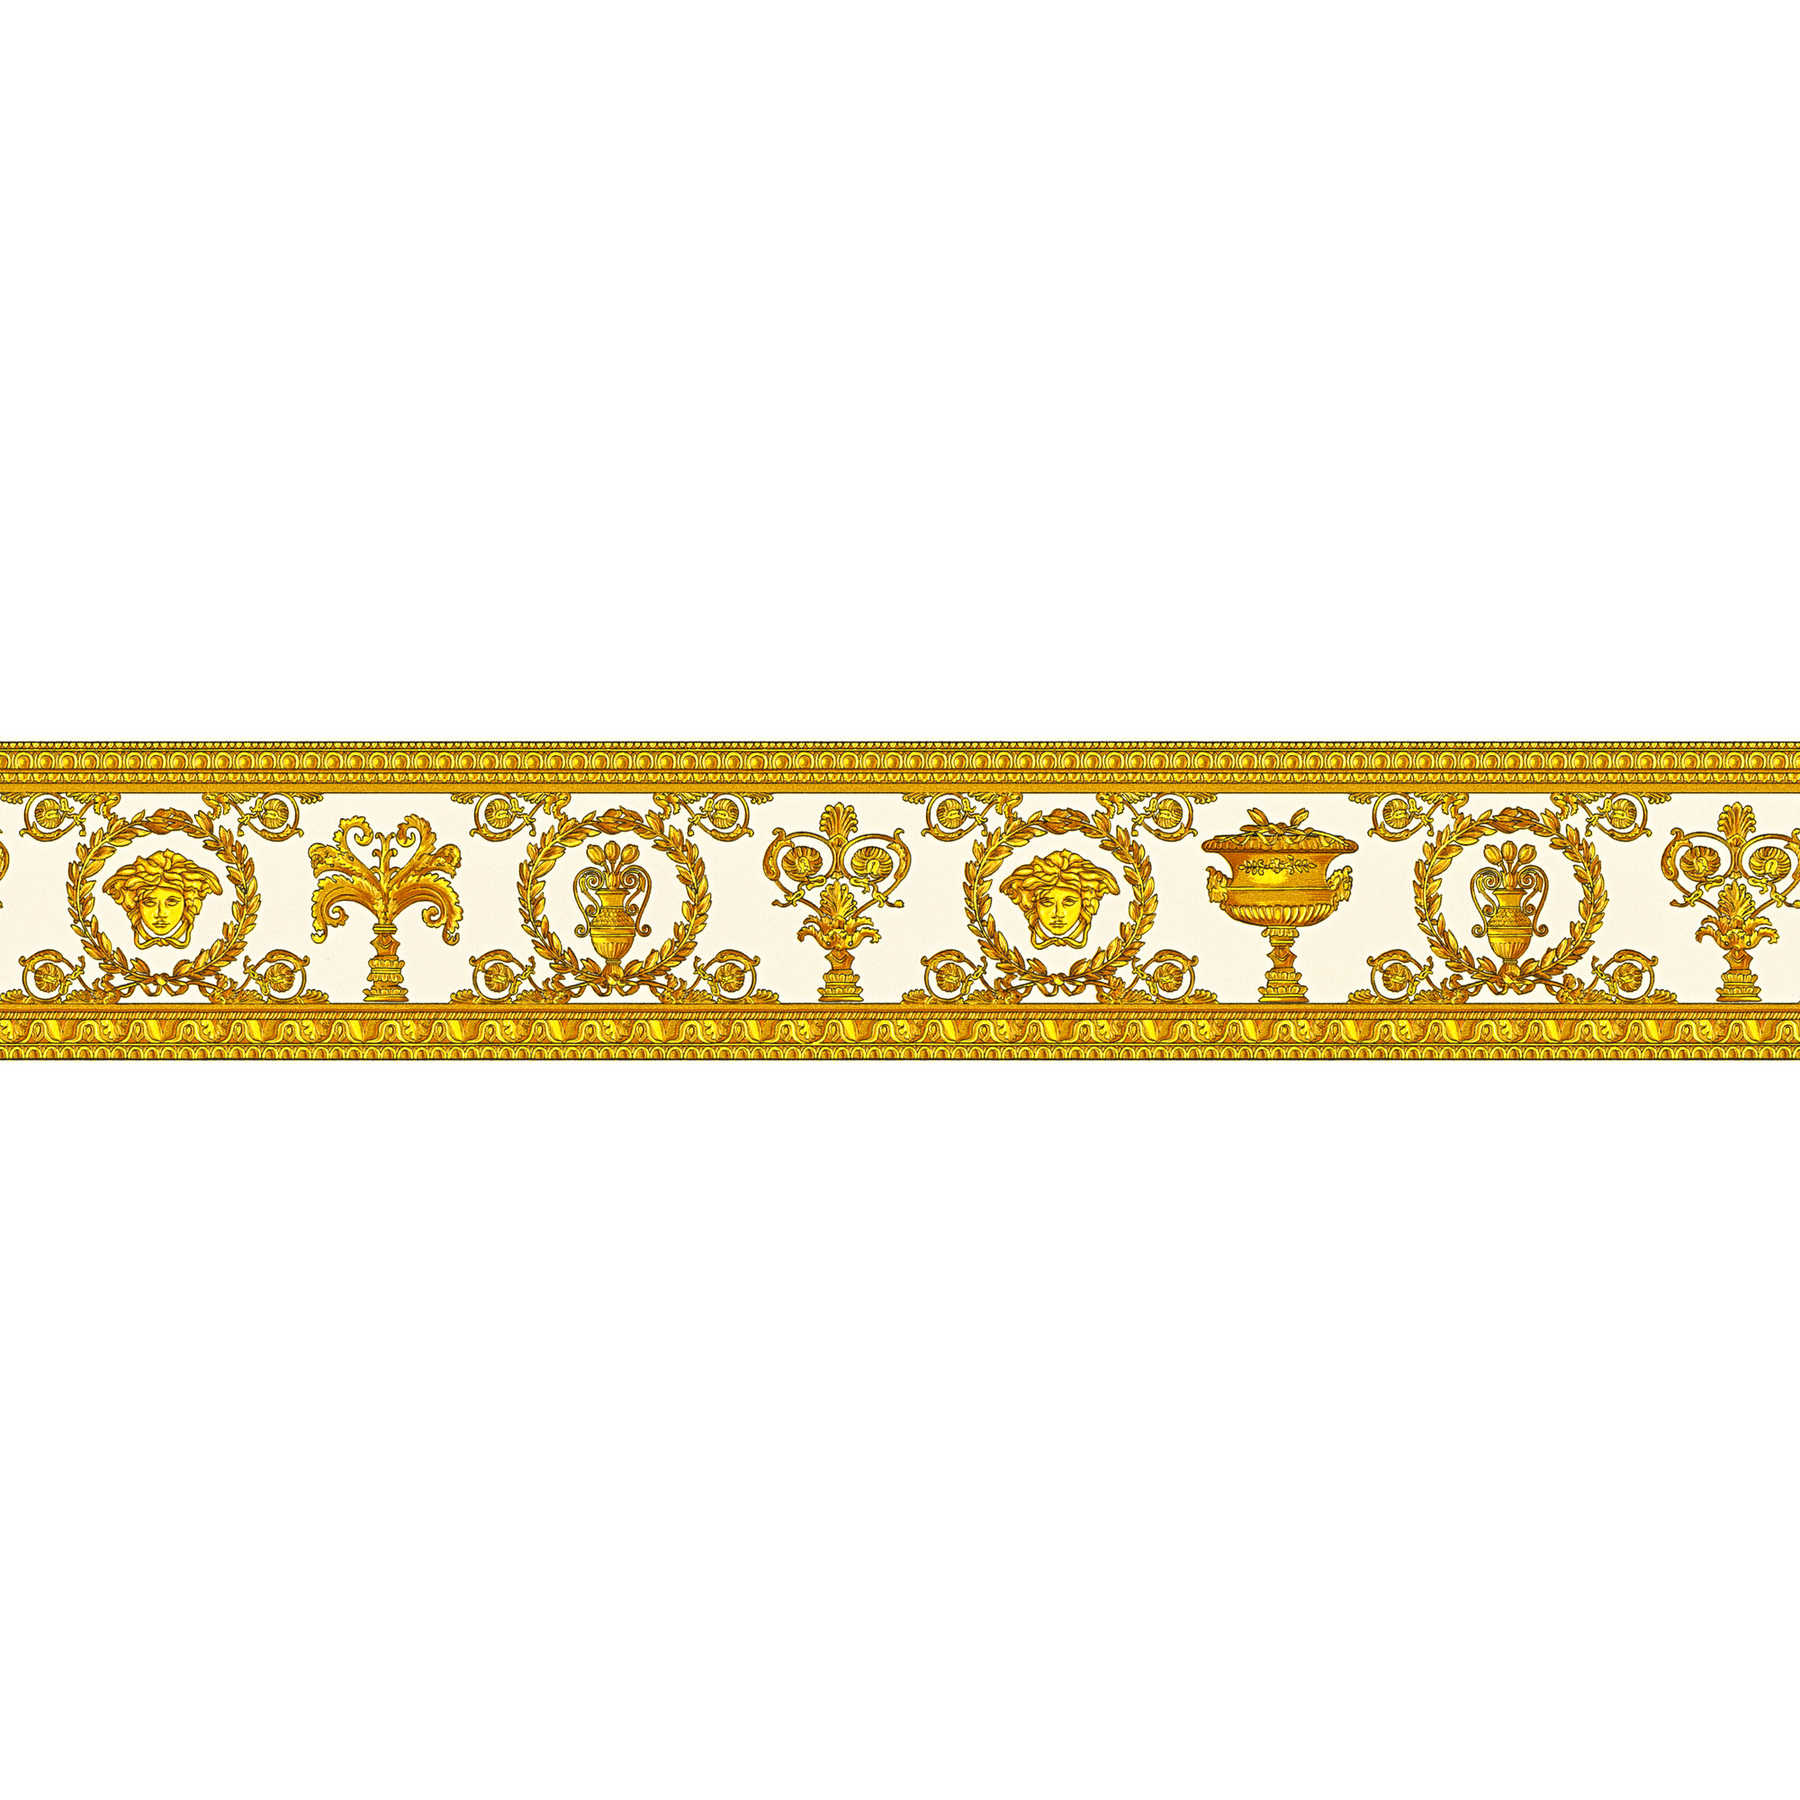             VERSACE Behangrand Golden trim - Metallic
        